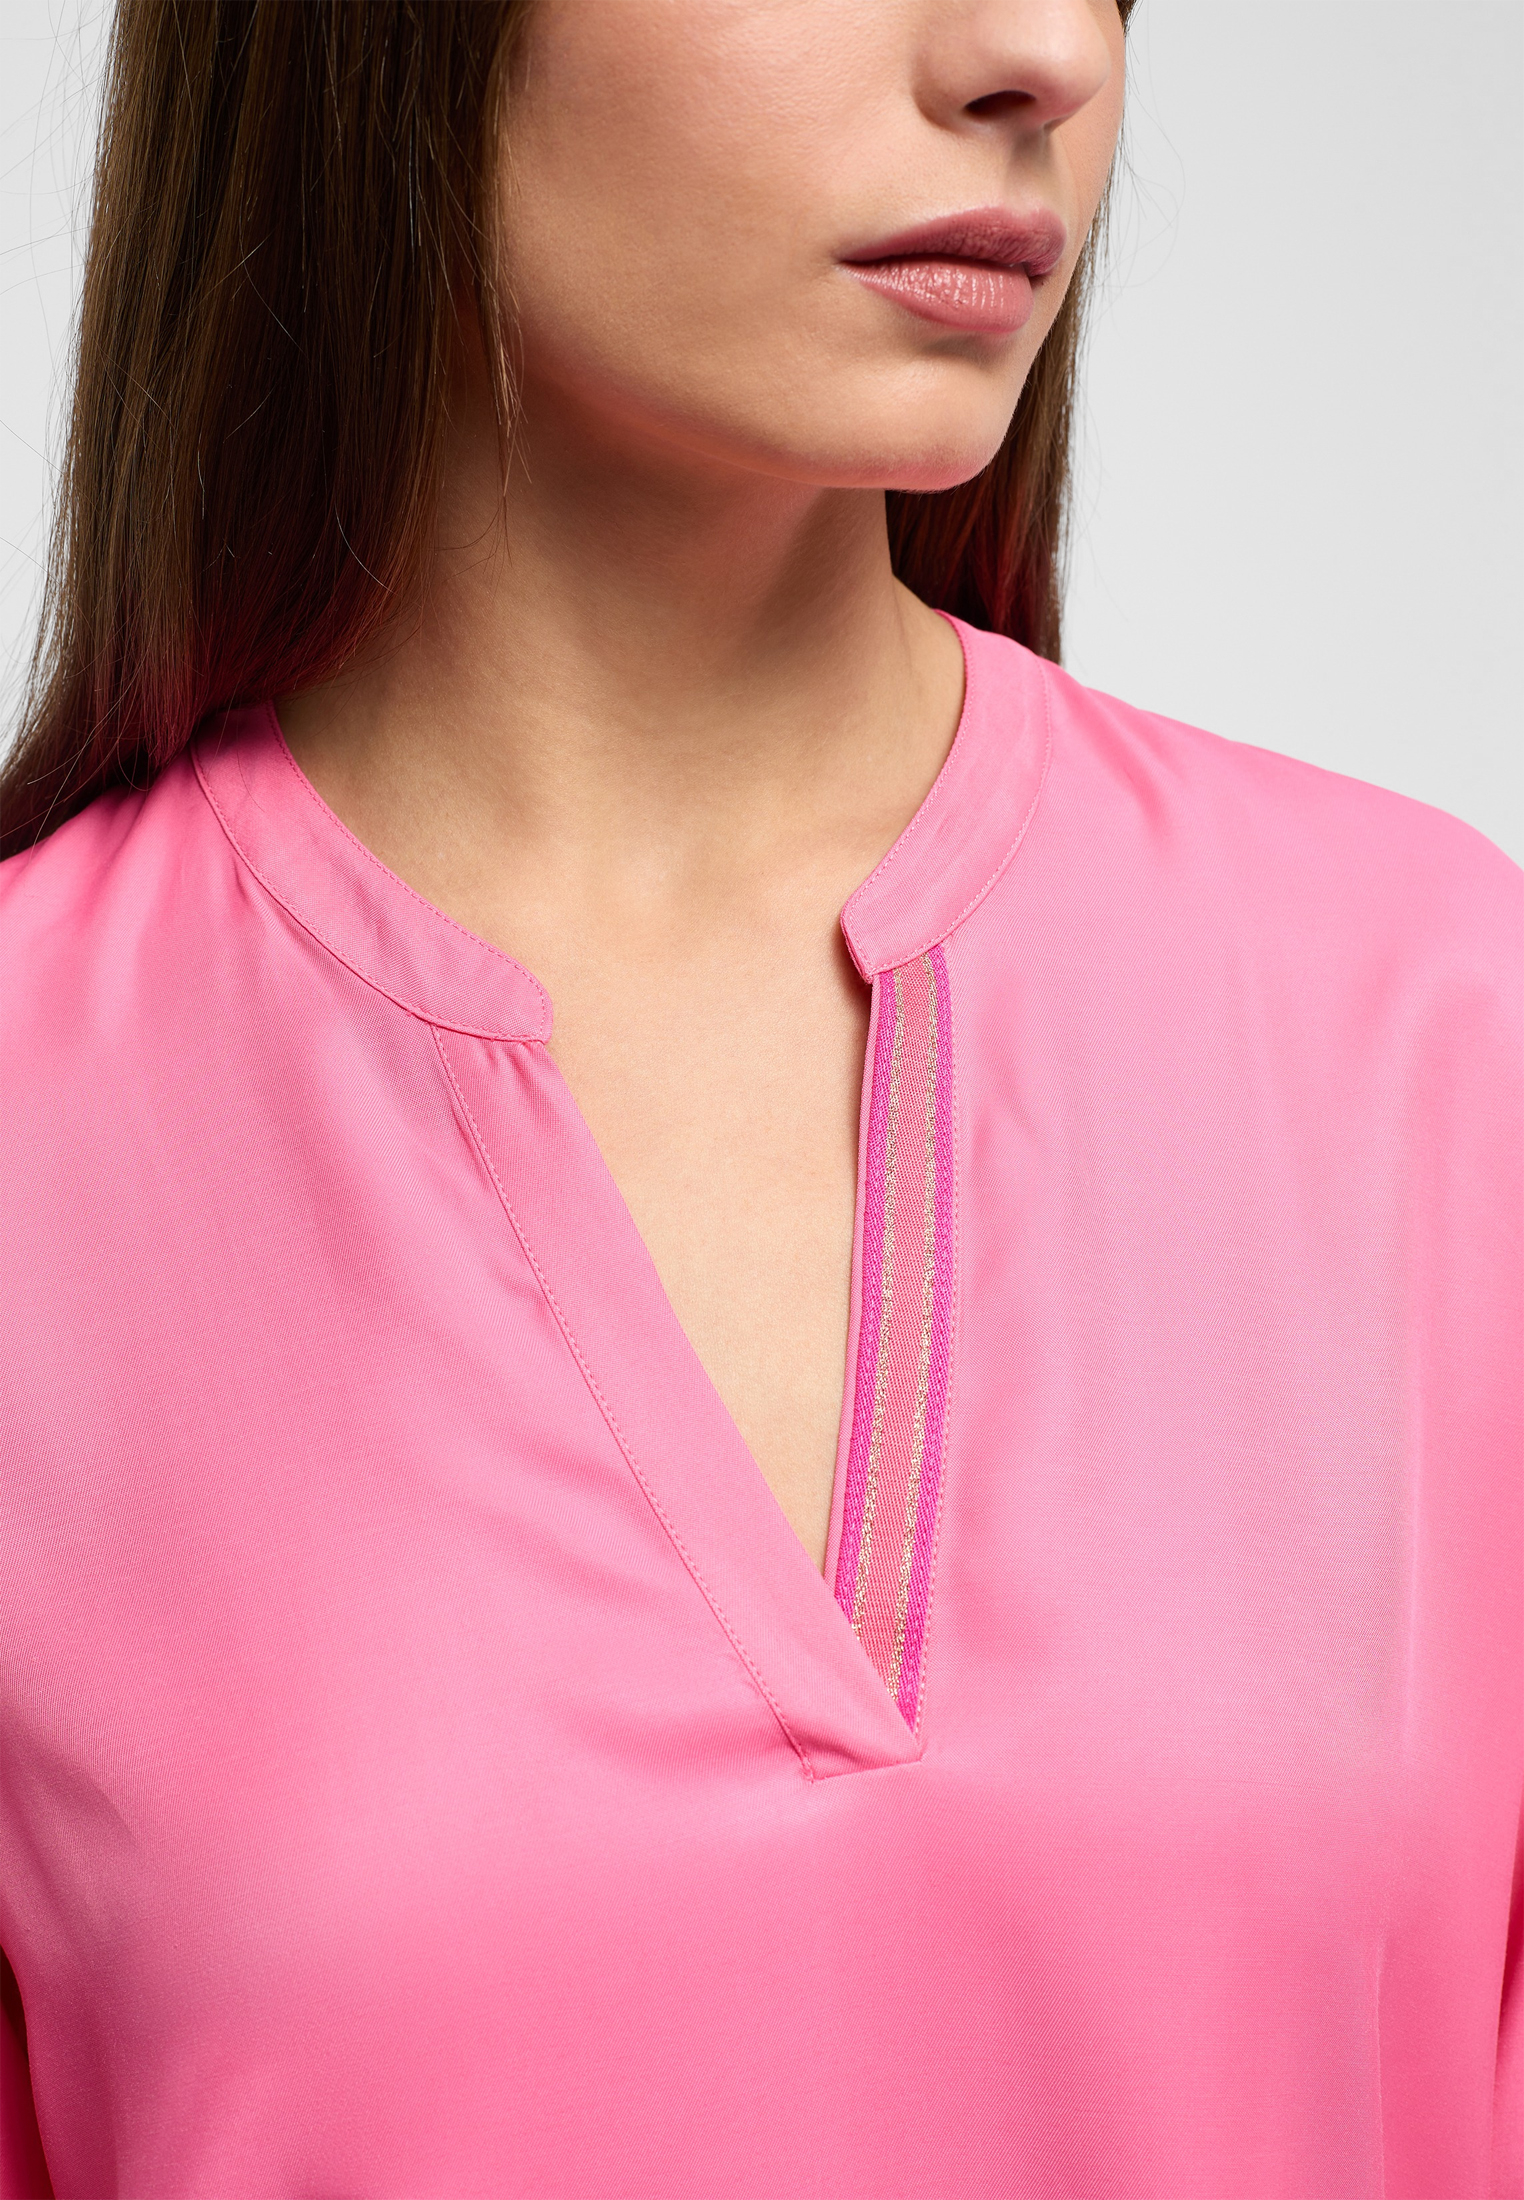 Langarm Viscose | in Bluse pink pink 42 2BL04272-15-21-42-1/1 | | unifarben Shirt |